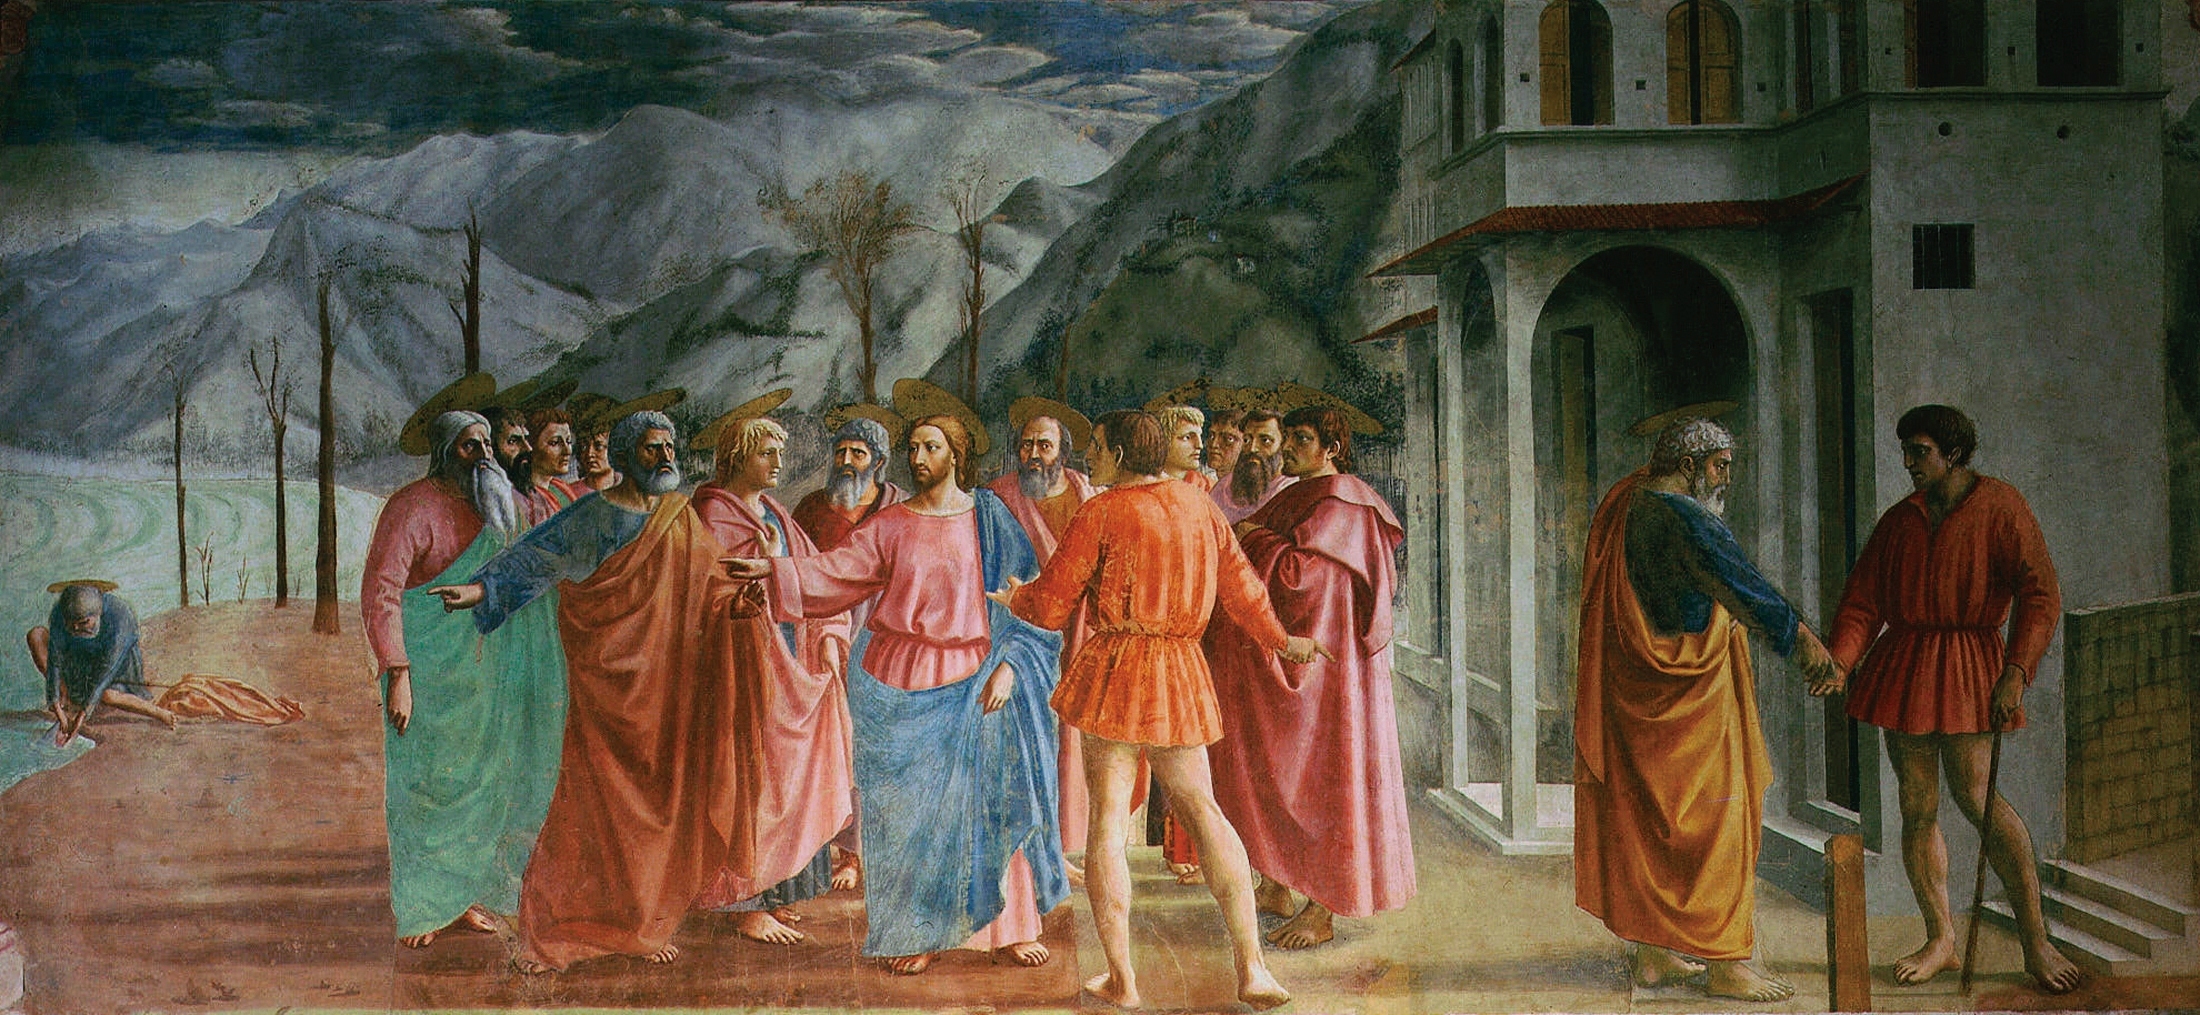 http://s4.picofile.com/file/8364027026/Masaccio7.jpg